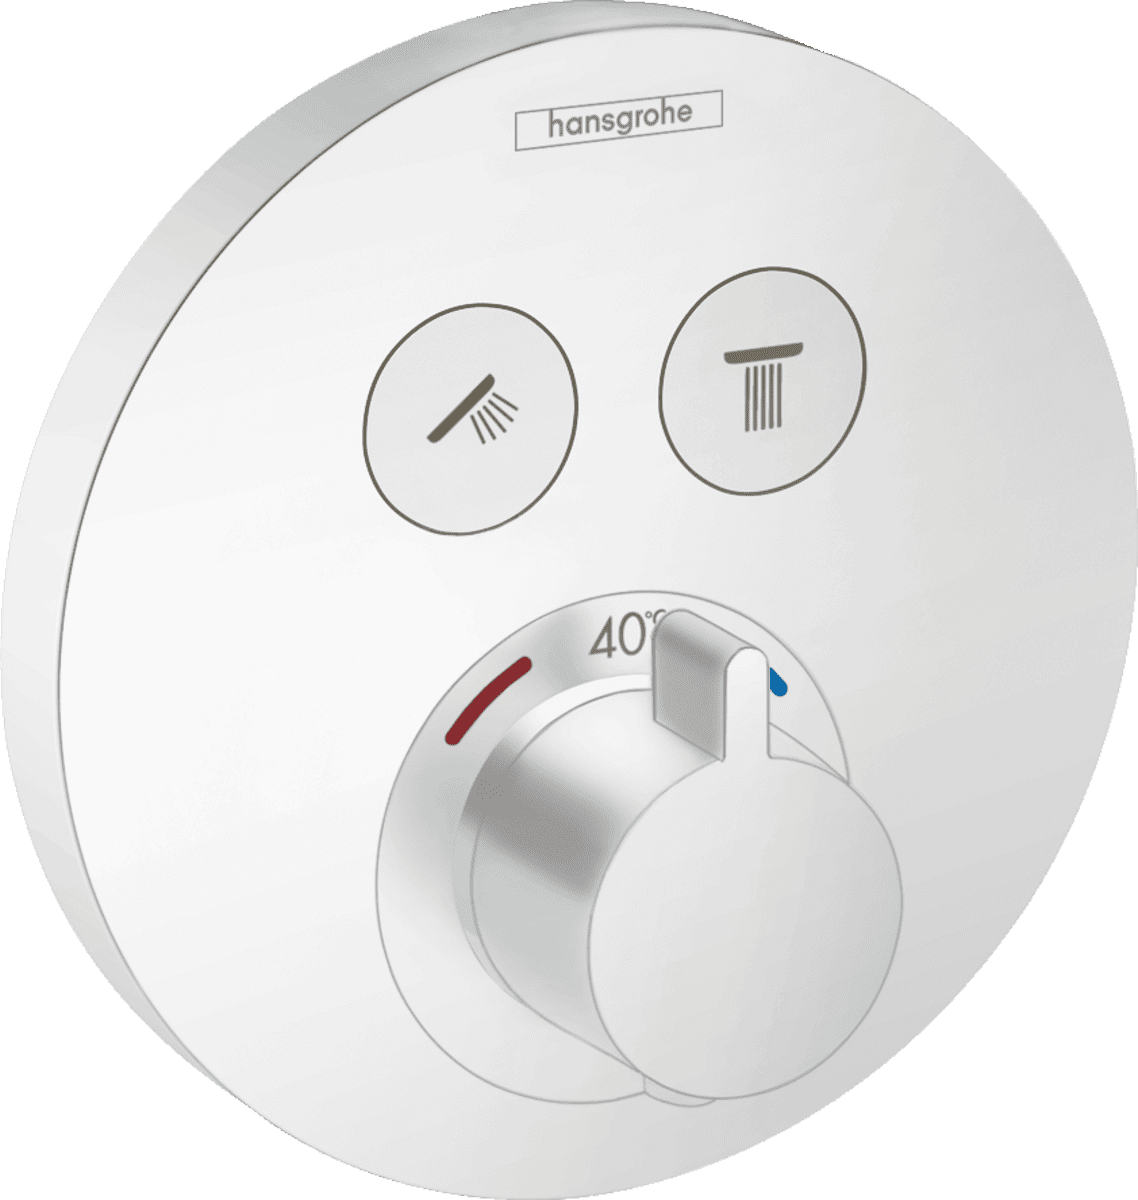 HANSGROHE ShowerSelect S Termostat ankastre montaj, 2 çıkış için #15743700 - Satin Beyaz resmi